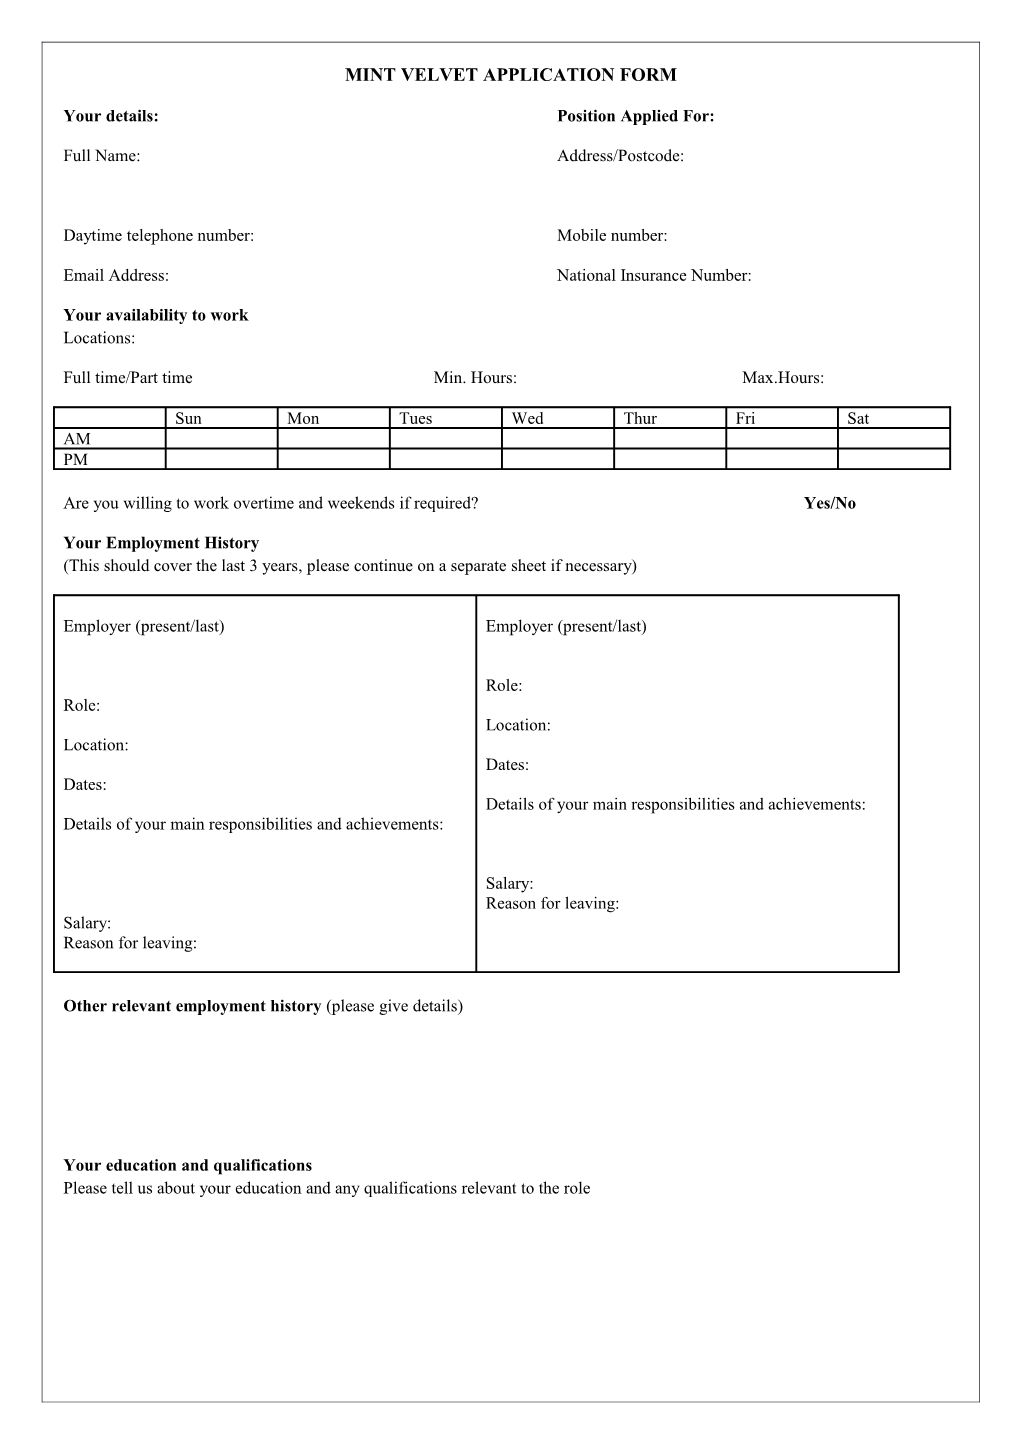 Mint Velvet Application Form